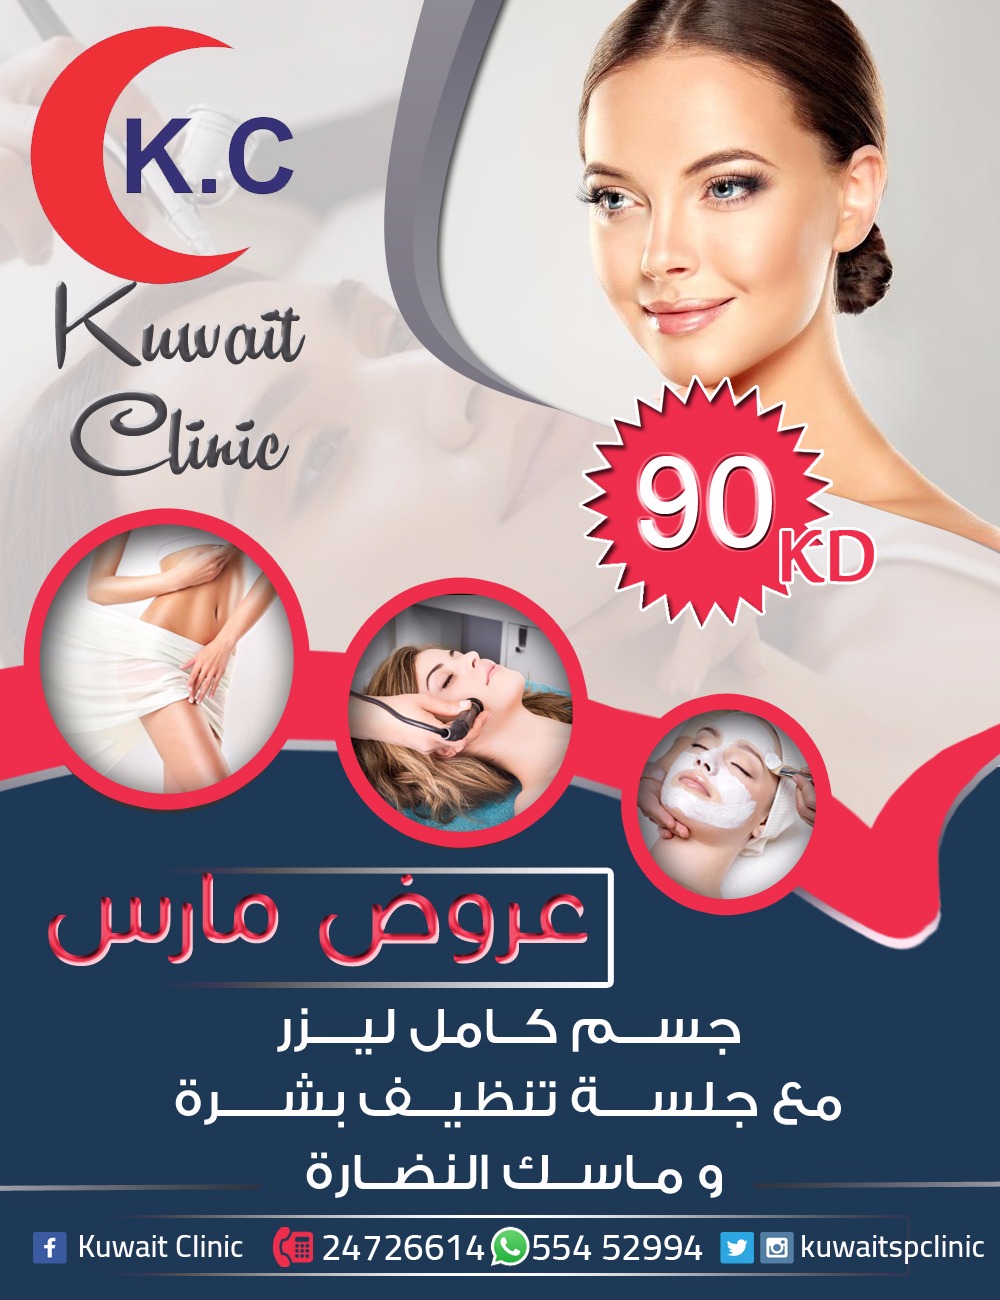 خدمات مستوصف الكويت التخصصي | أفضل مركز طبي في الكويت  4